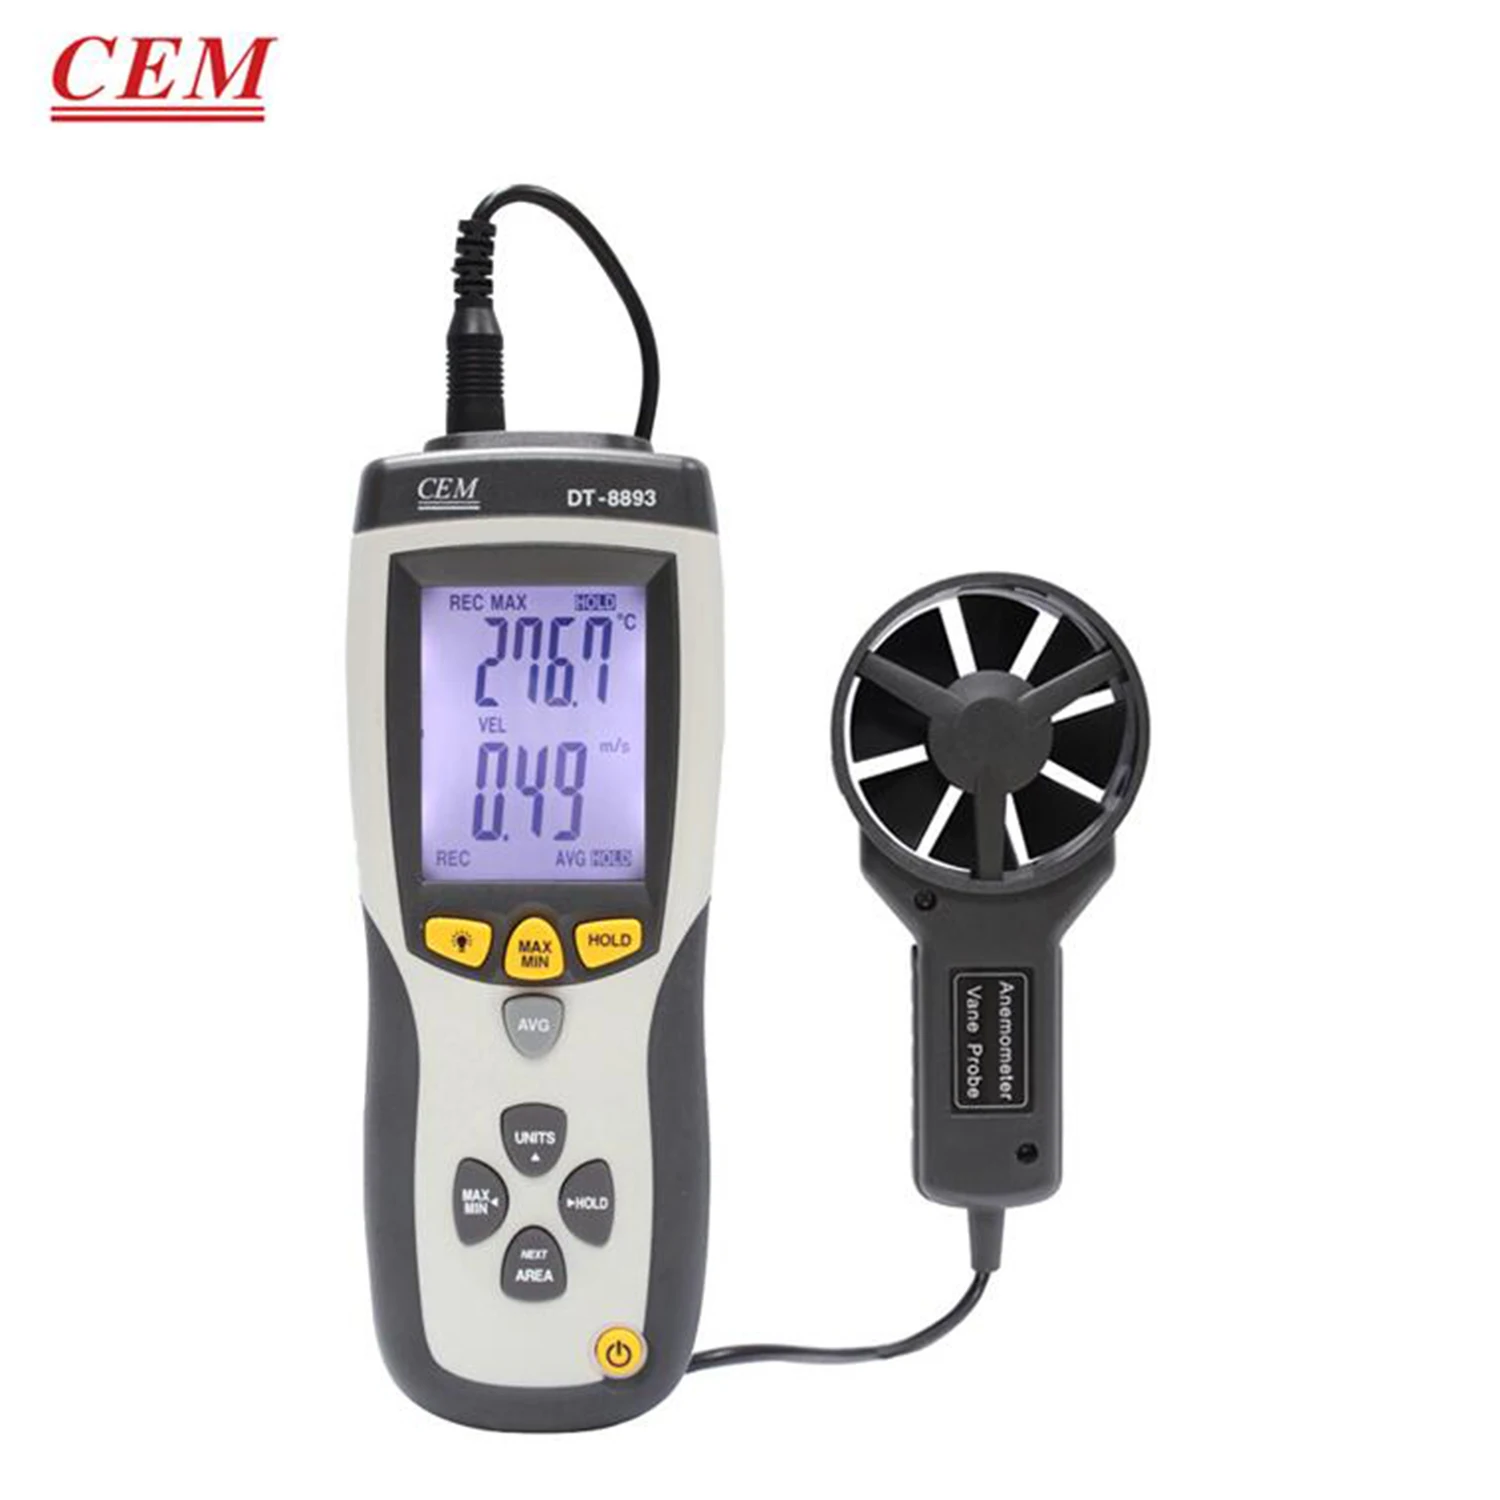 

Цифровой Ручной Высокоточный Анемометр CEM DT-8893 DT-8894 с цифровым дисплеем, измеритель объема воздуха, анемометр, USB-термометр воздуха.